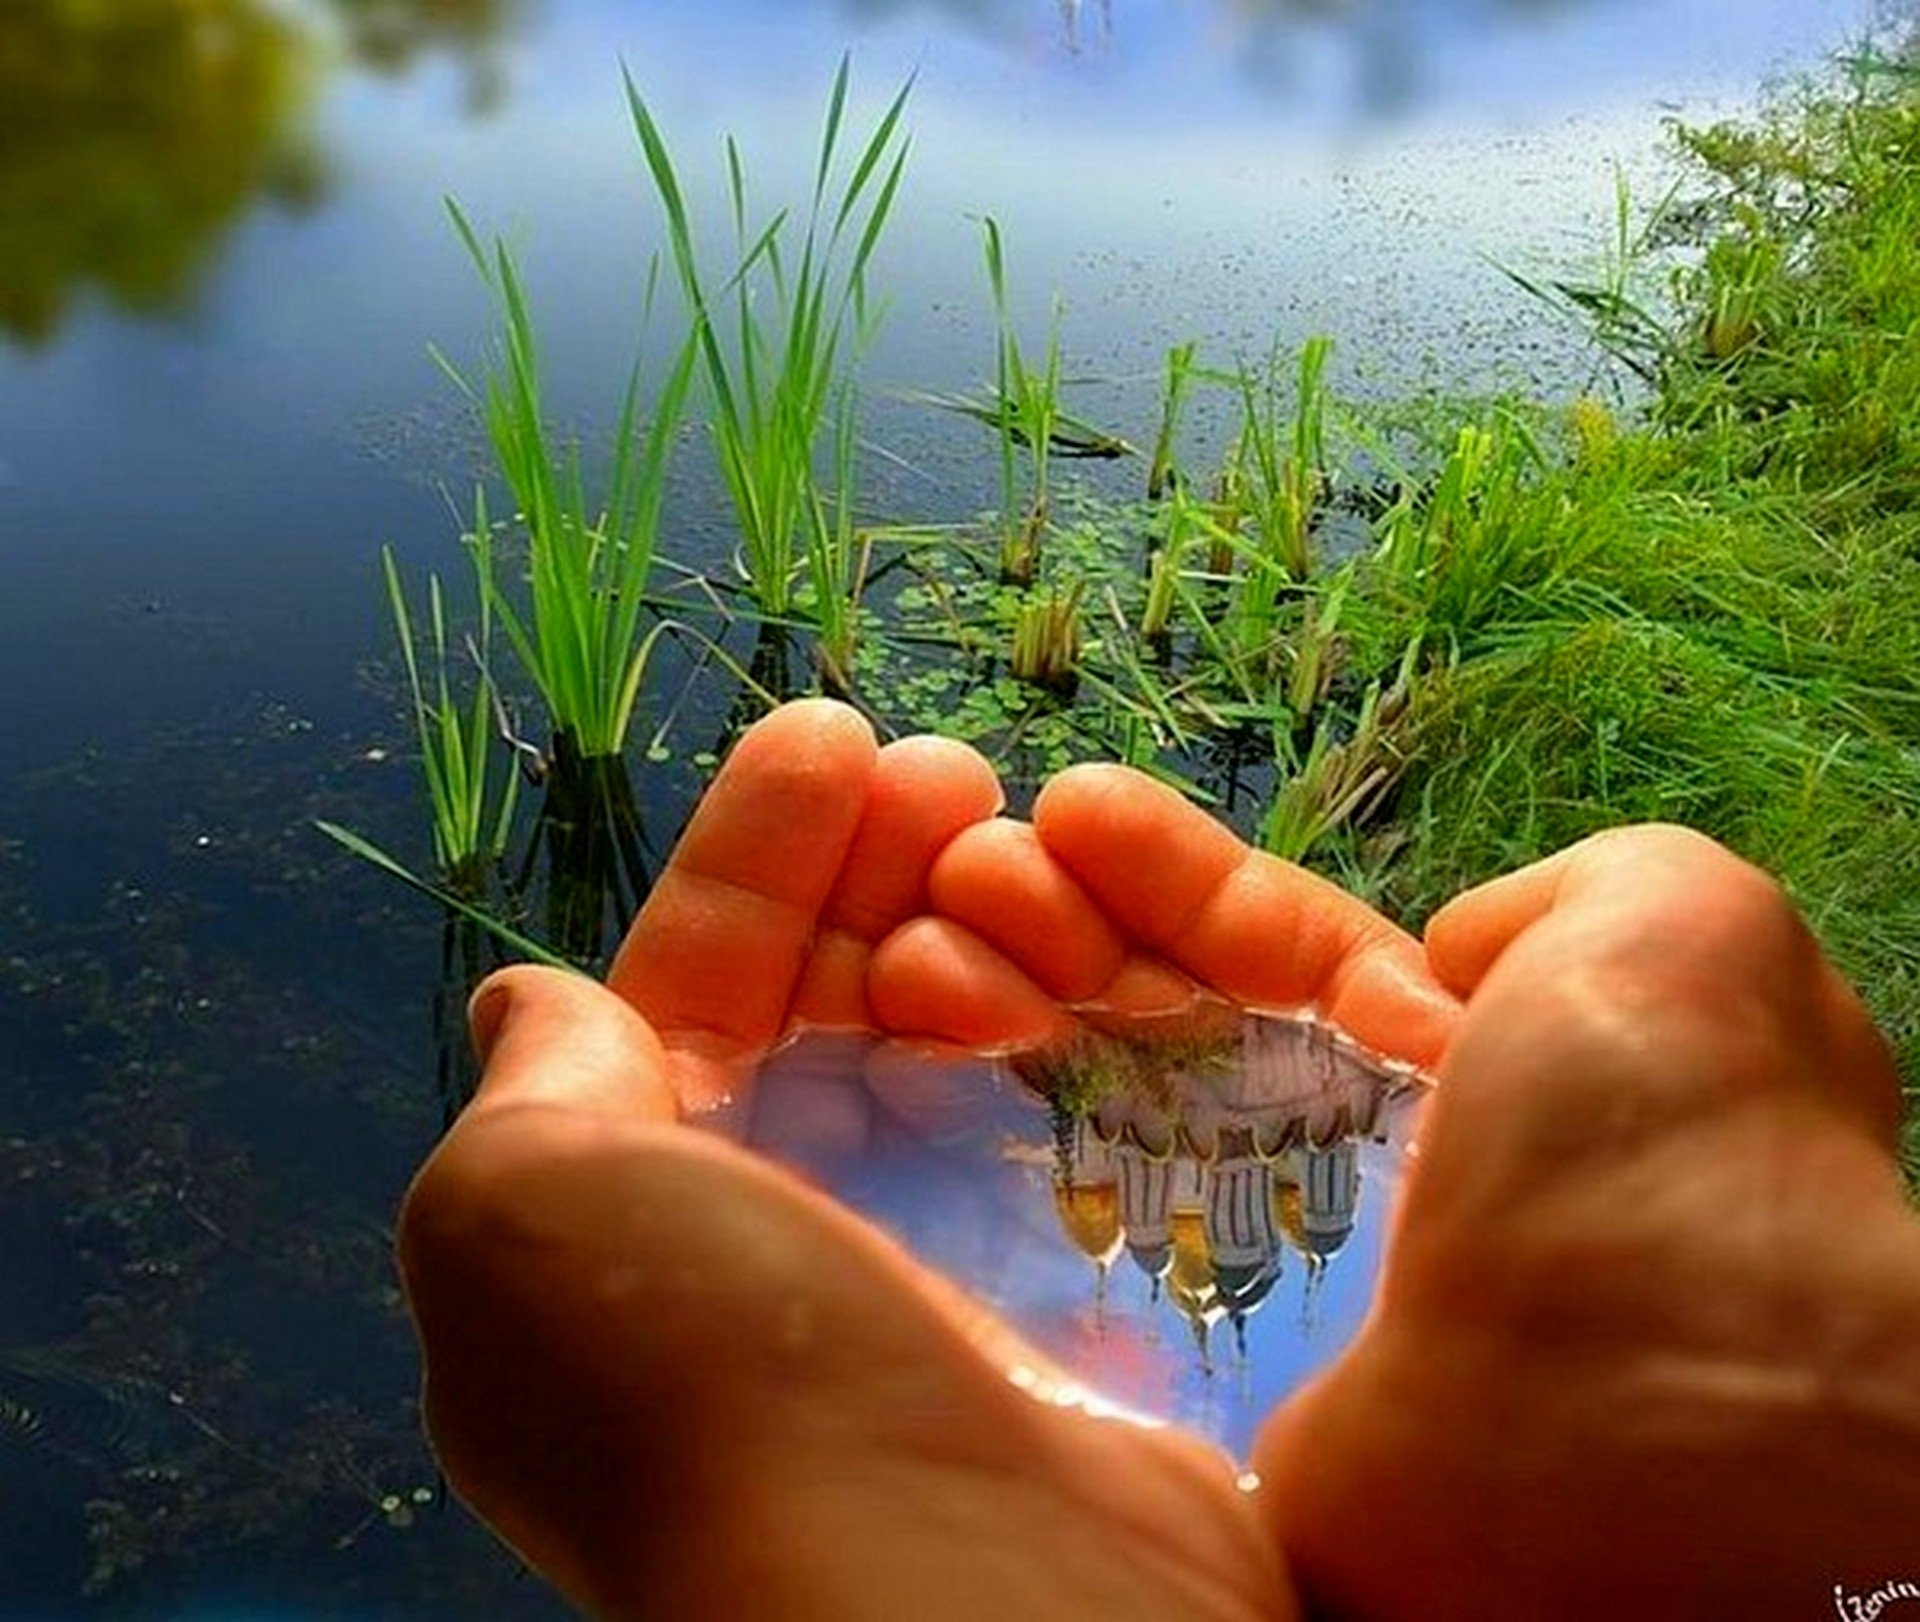 День чистого берега. Вода в ладонях. Любовь к природе. Человек и природа. Твори добро.